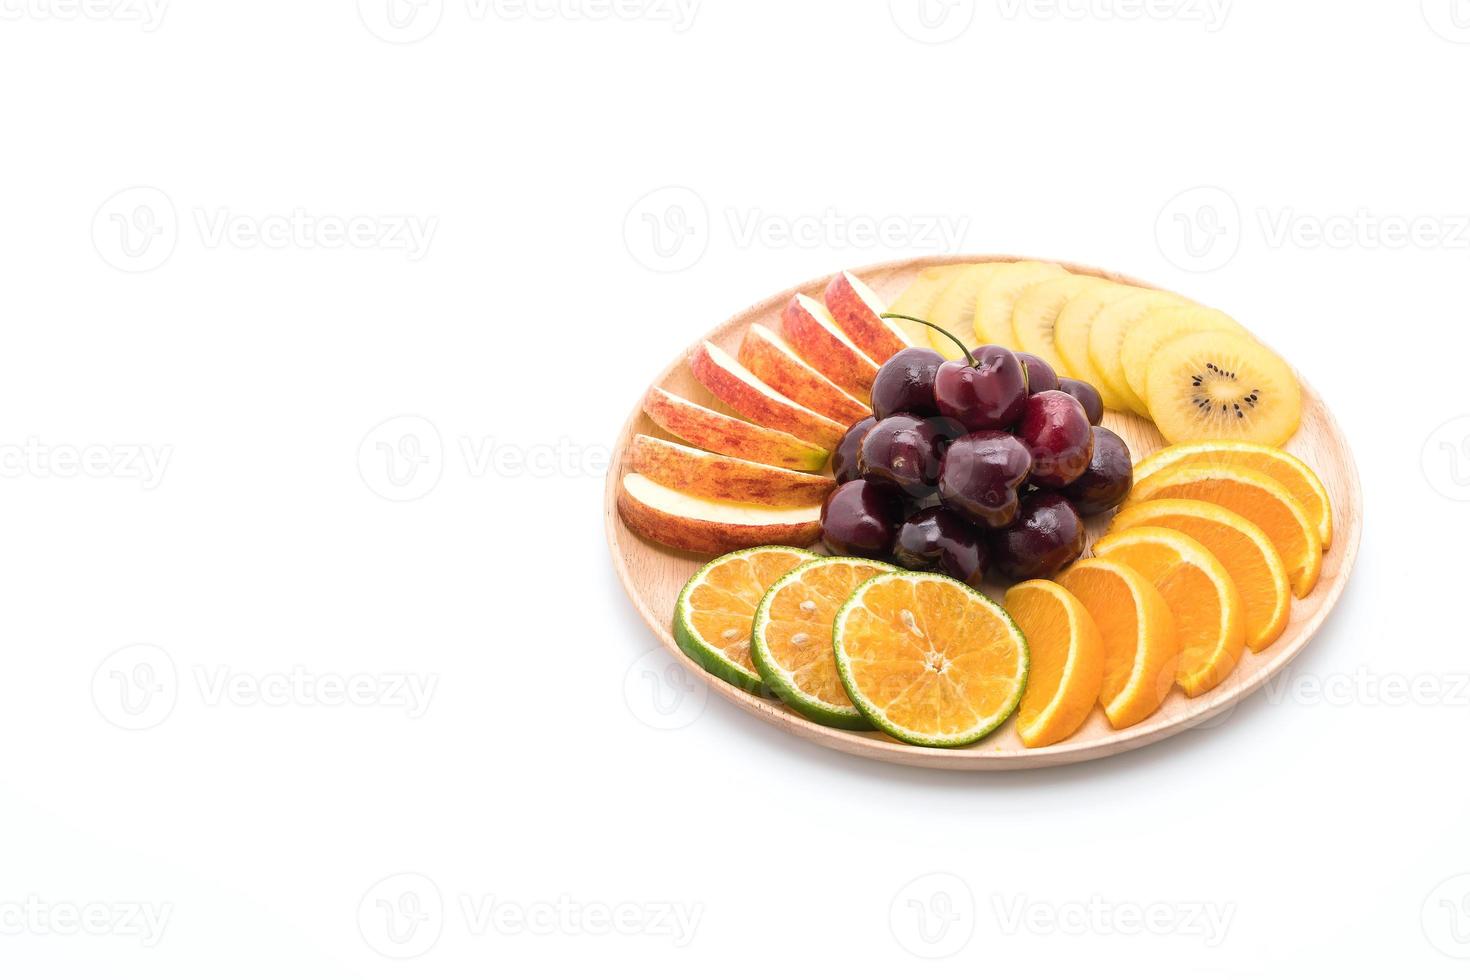 Fruta en rodajas mixtas en un tazón de madera foto